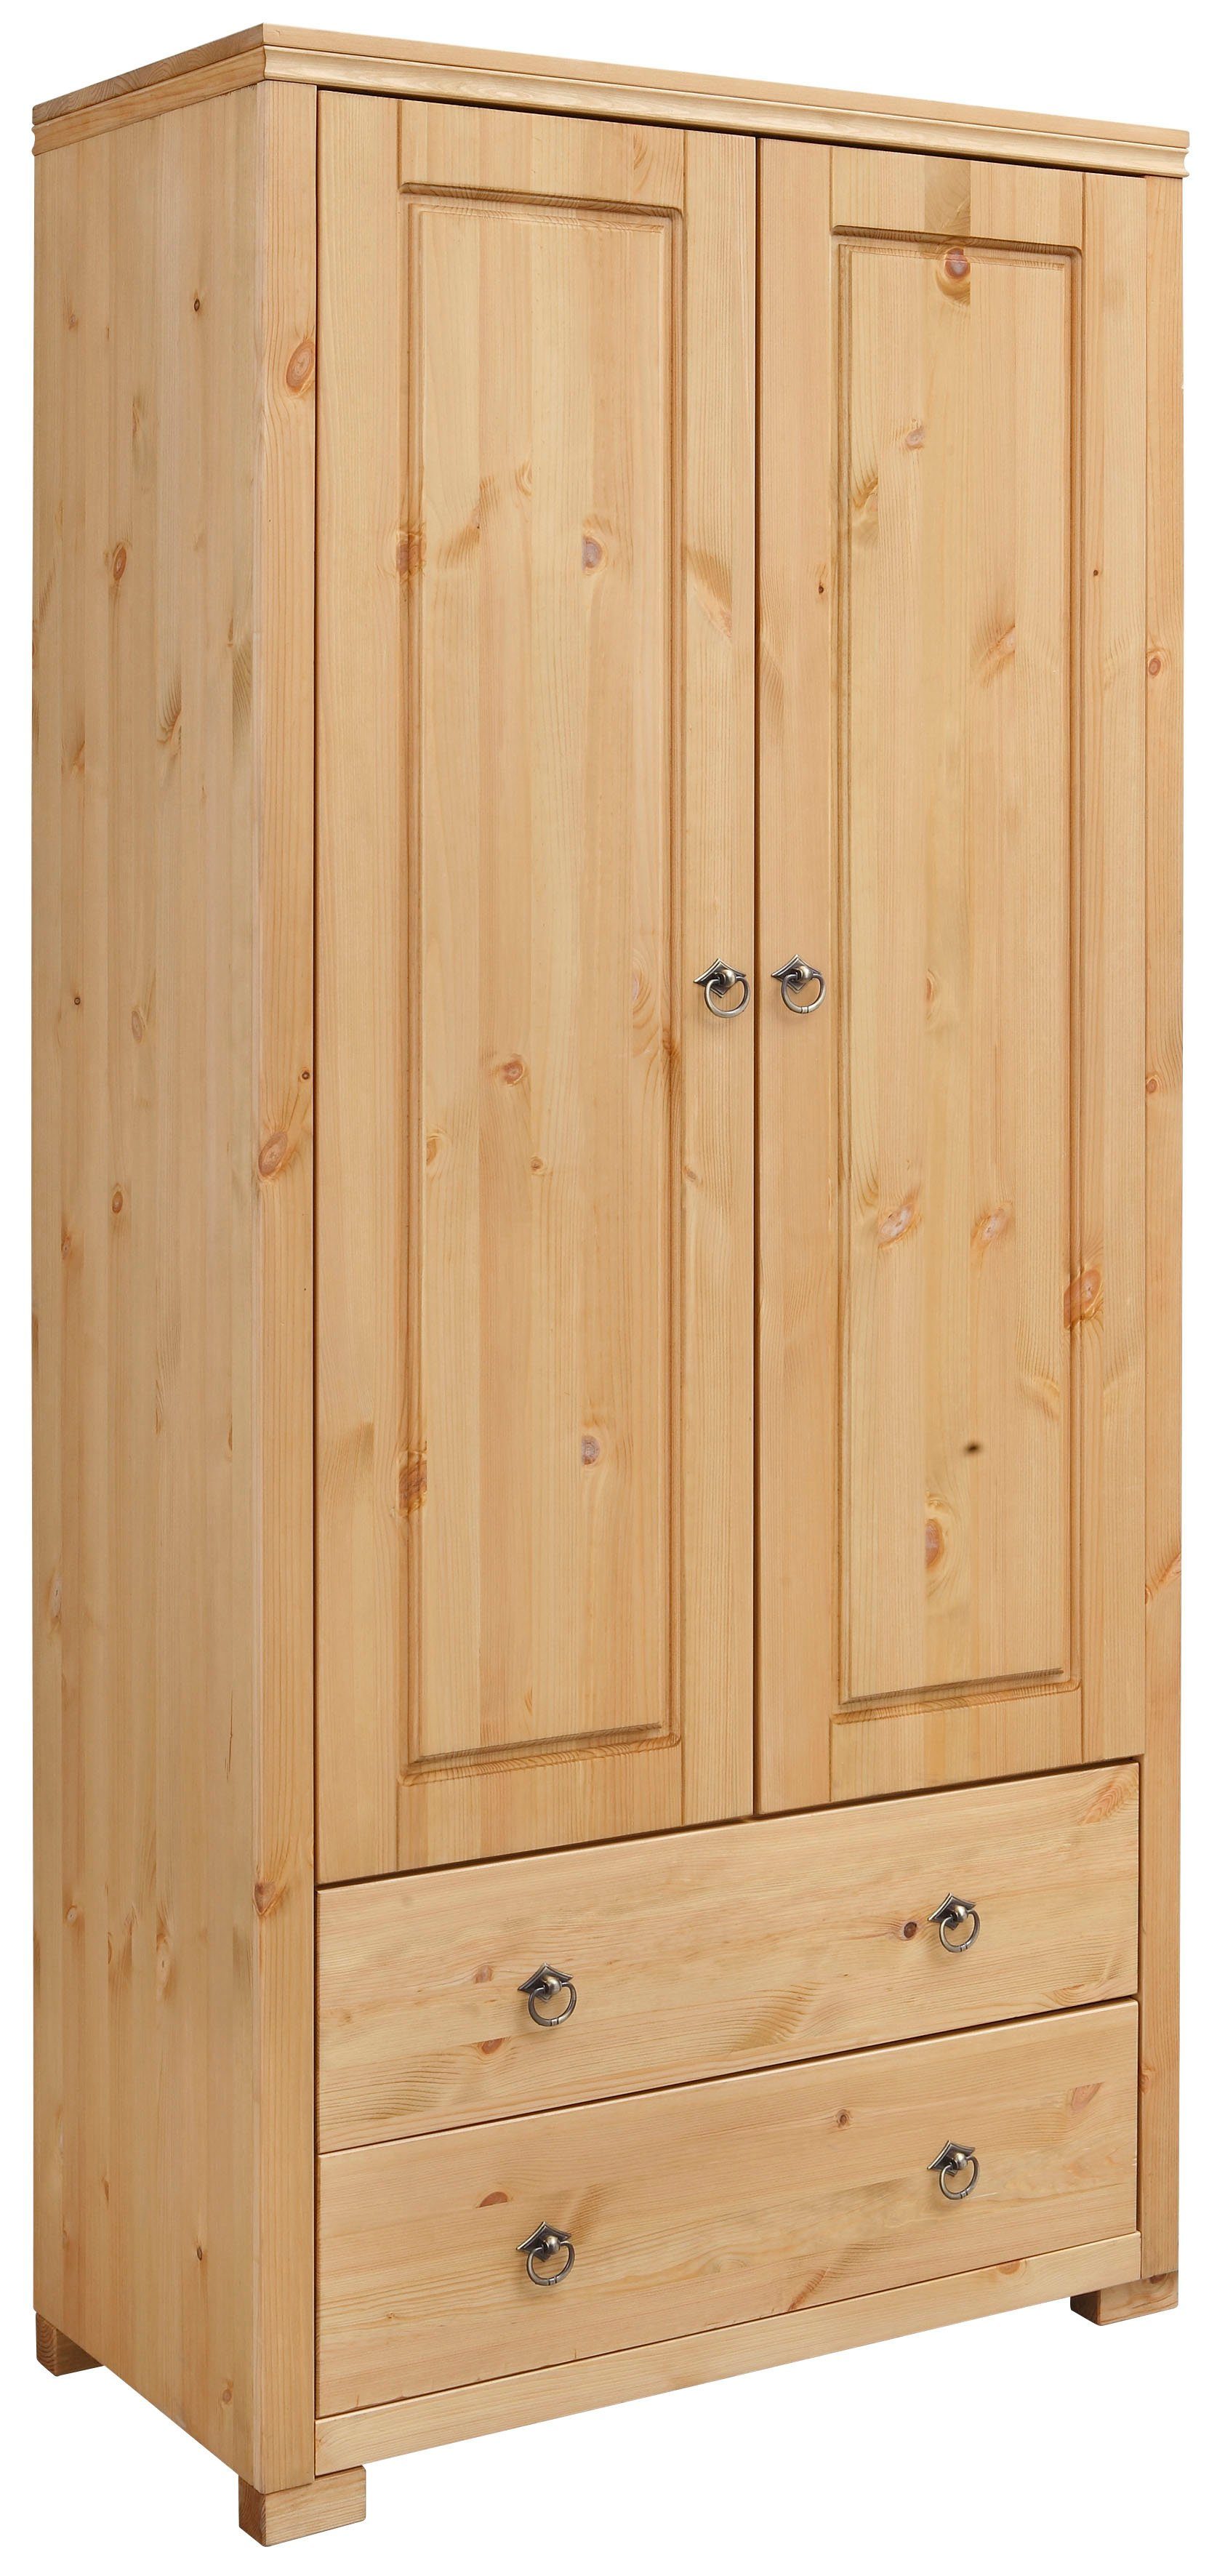 home affaire kledingkast gotland hoogte 178 cm, met houten deuren beige